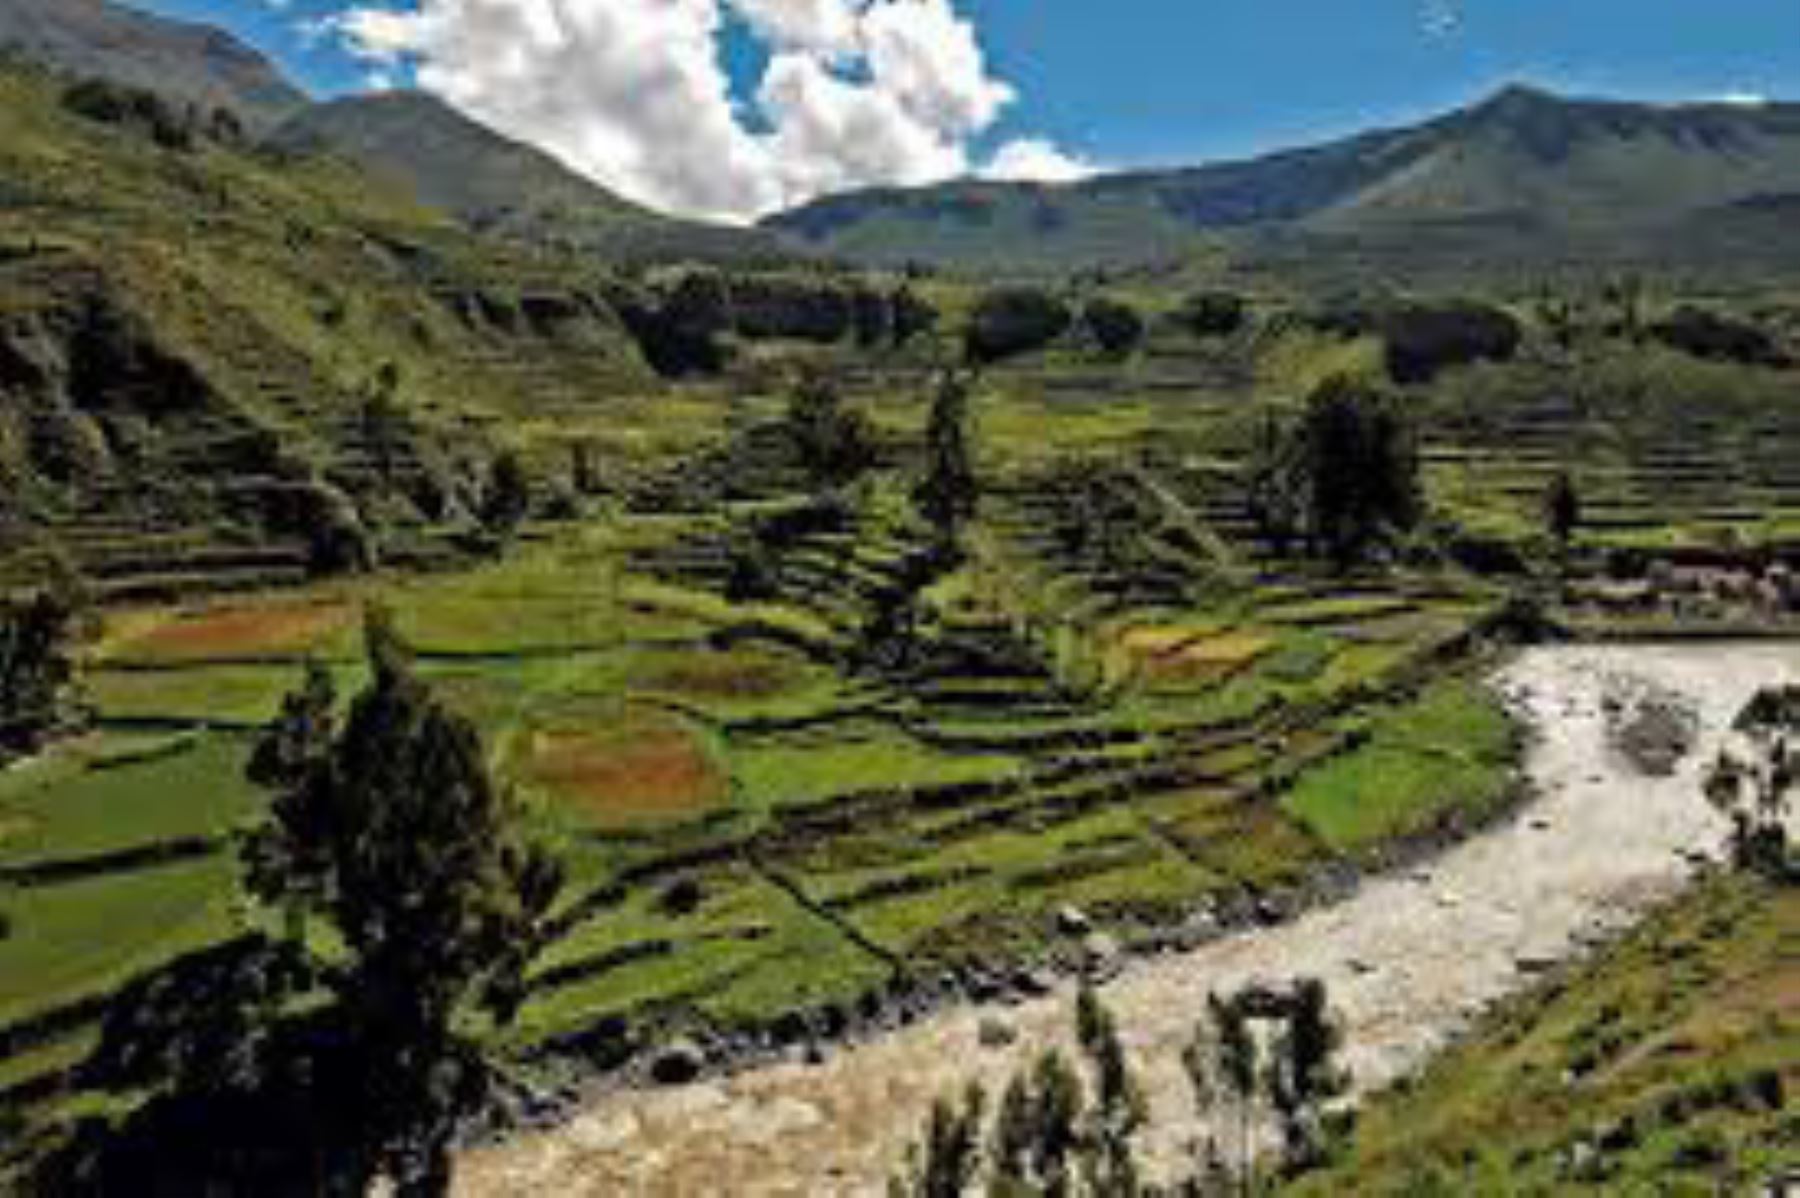 El Perú posee un rico y variado patrimonio geológico. El Valle del Colca es uno de los espectaculares destinos para hacer geoturismo en el Perú. INTERNET/Medios